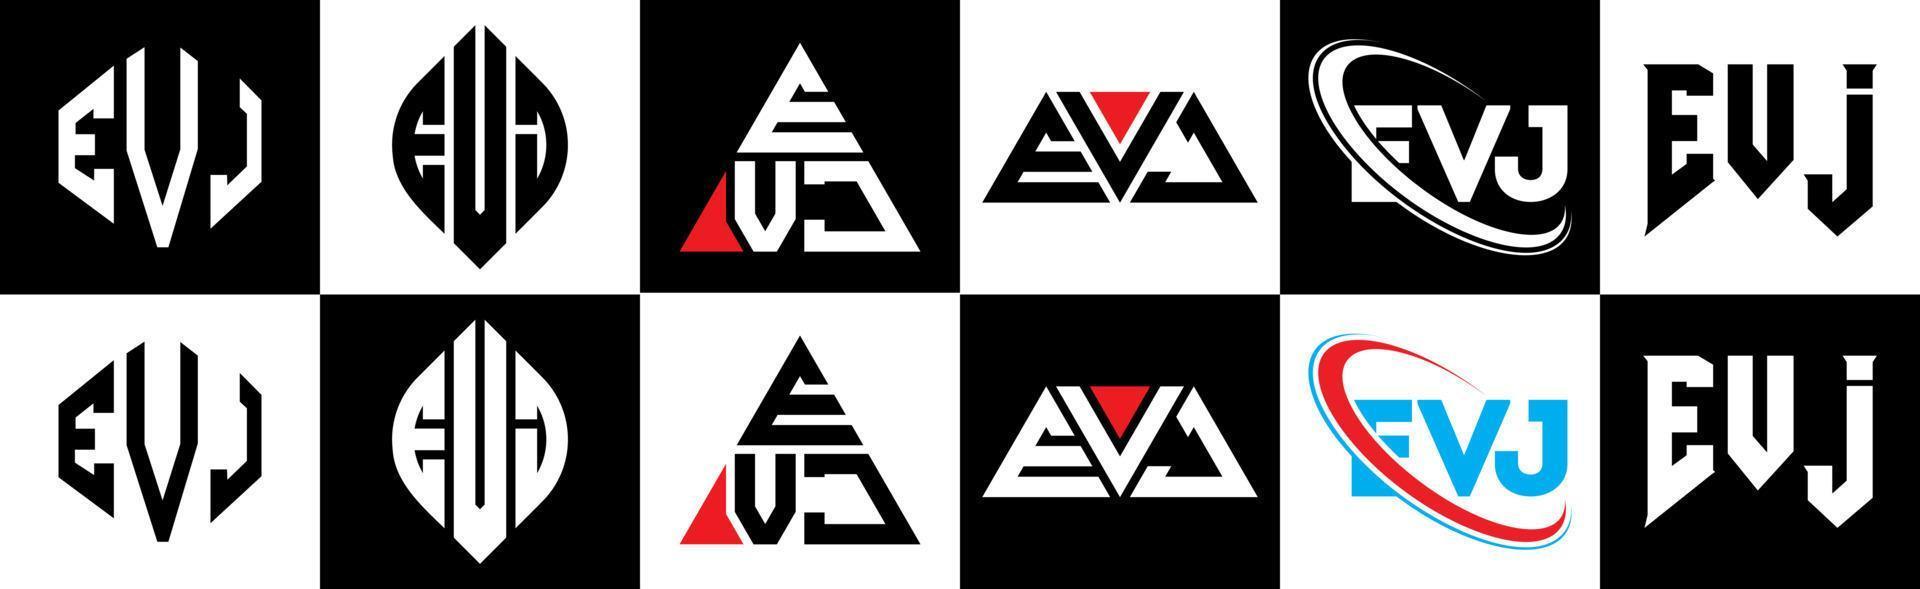 Evj-Buchstaben-Logo-Design in sechs Stilen. evj Polygon, Kreis, Dreieck, Sechseck, flacher und einfacher Stil mit schwarz-weißem Buchstabenlogo in einer Zeichenfläche. evj minimalistisches und klassisches Logo vektor